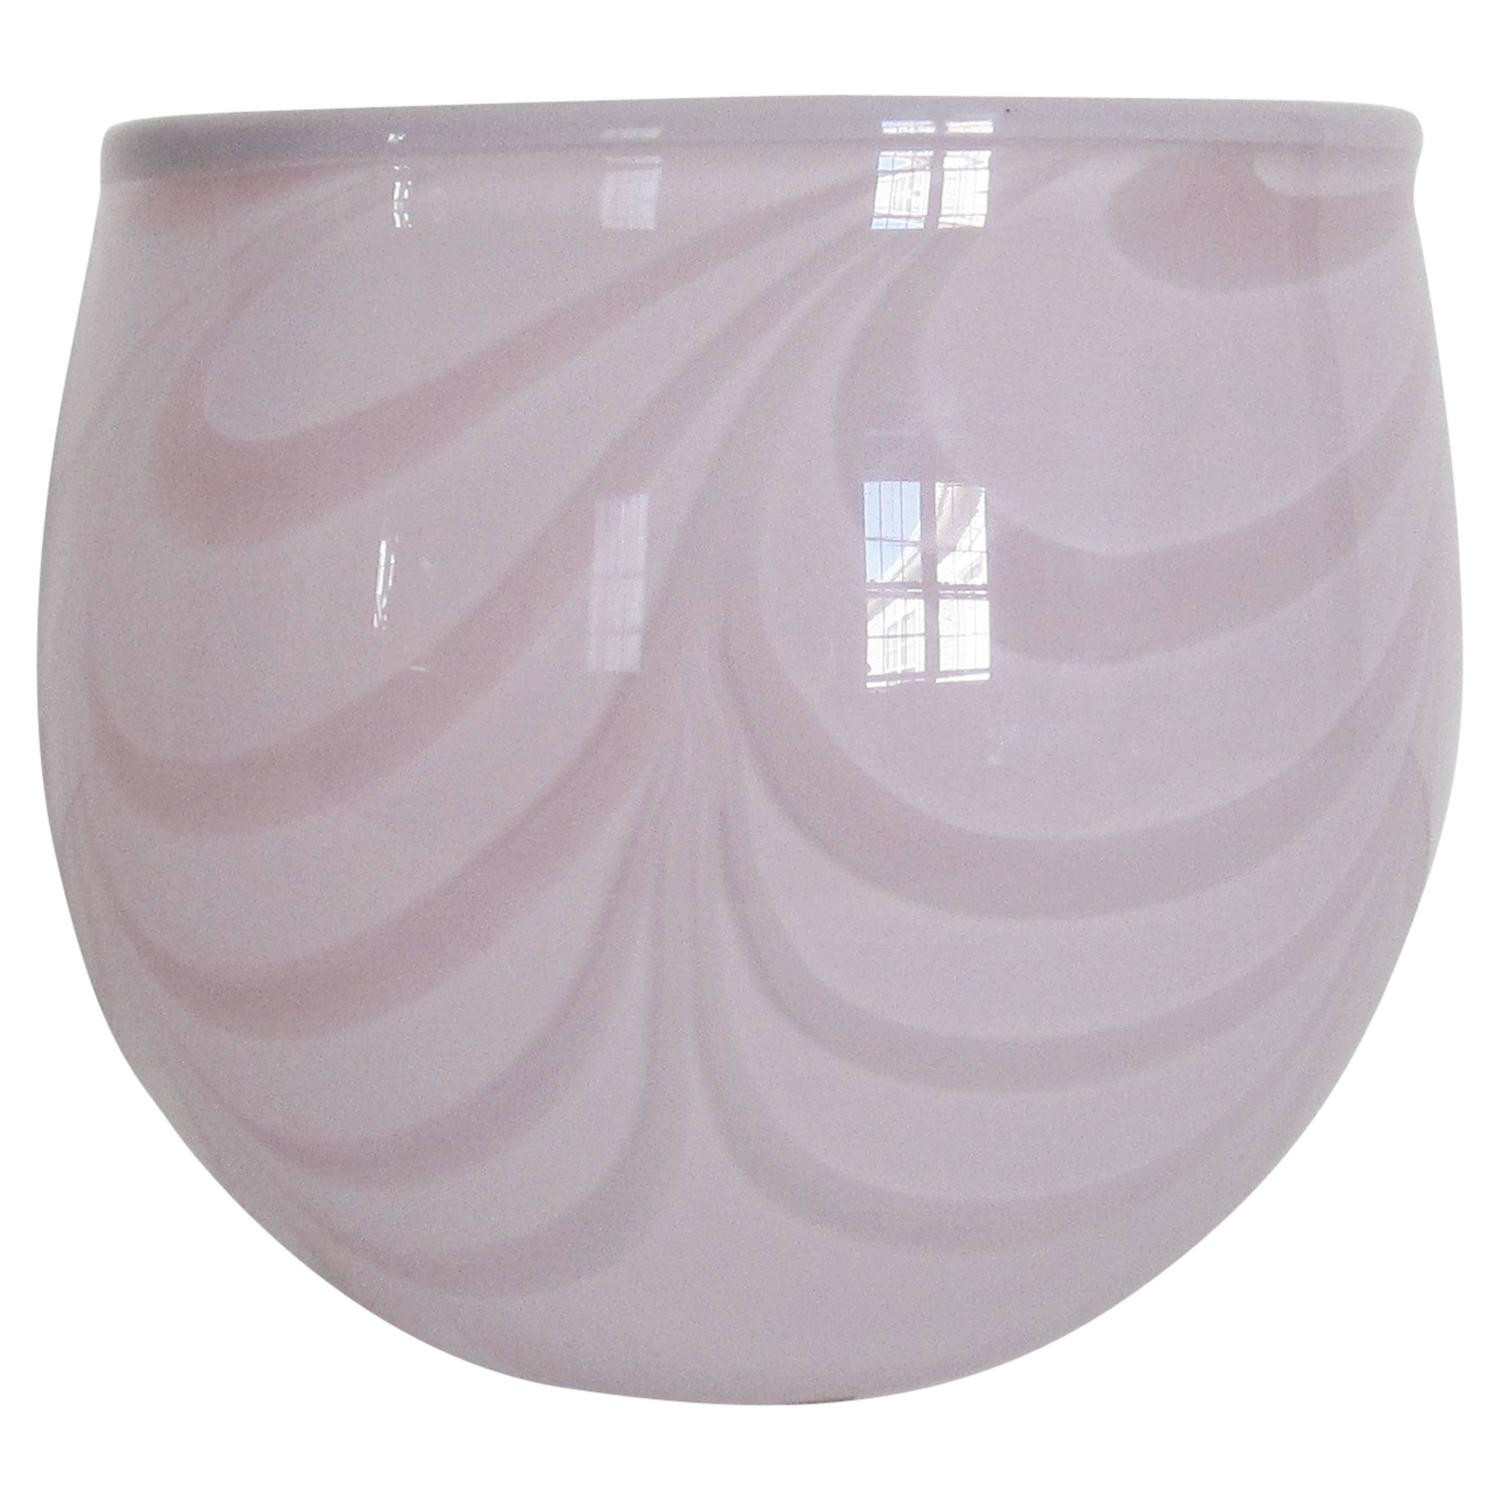 29 Lovely Kosta Boda Crystal Vase 2024 free download kosta boda crystal vase of swedish glass vase by designer kjell engman for sale at 1stdibs inside 3415182 z